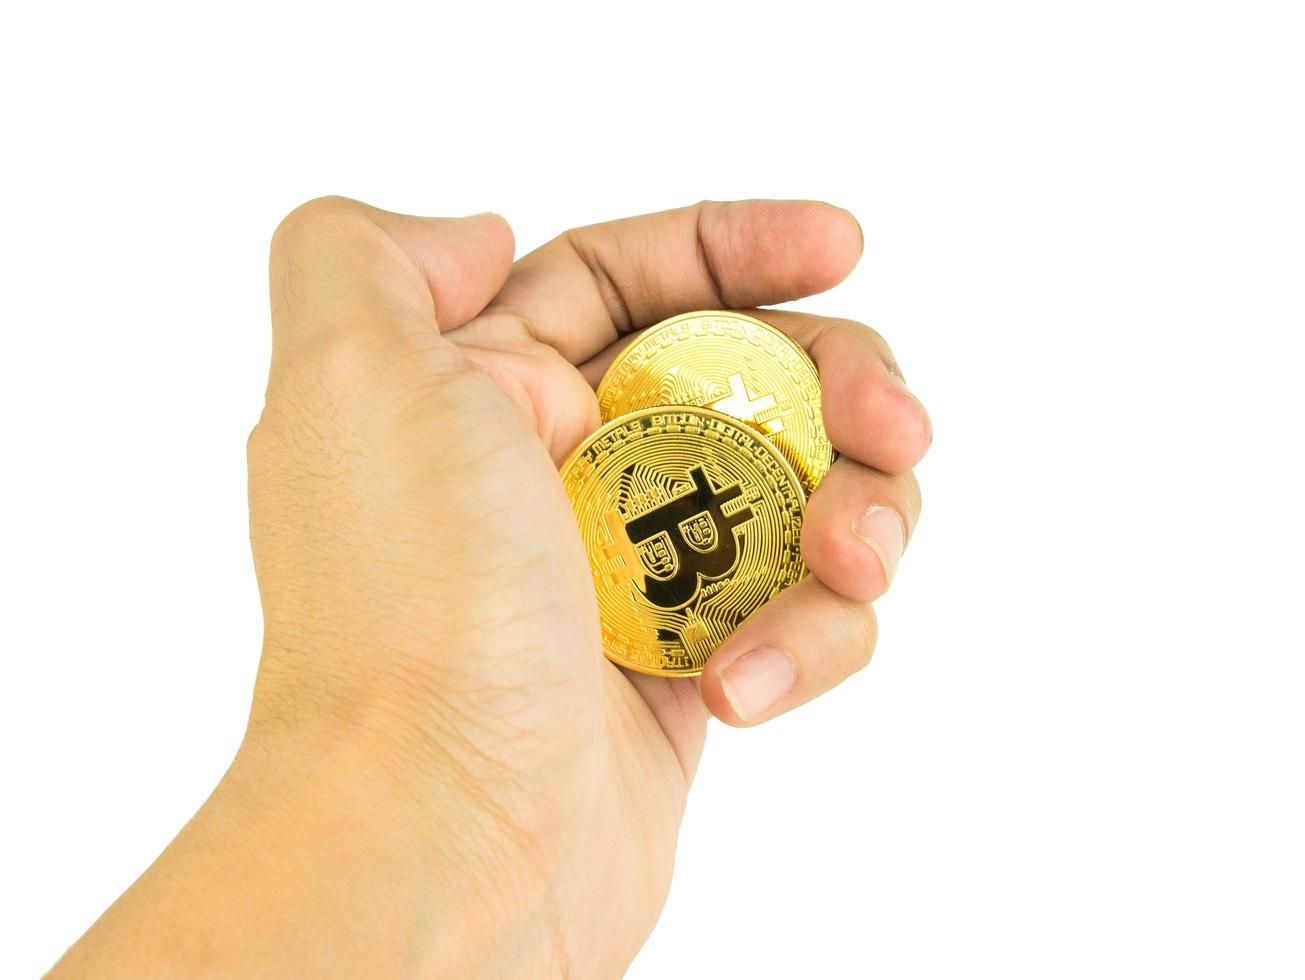 Hand halten Bitcoin-Kryptowährung digital isoliert auf weißem Hintergrund mit Beschneidungspfad, BTC-Währungstechnologie-Business-Internet-Konzept foto